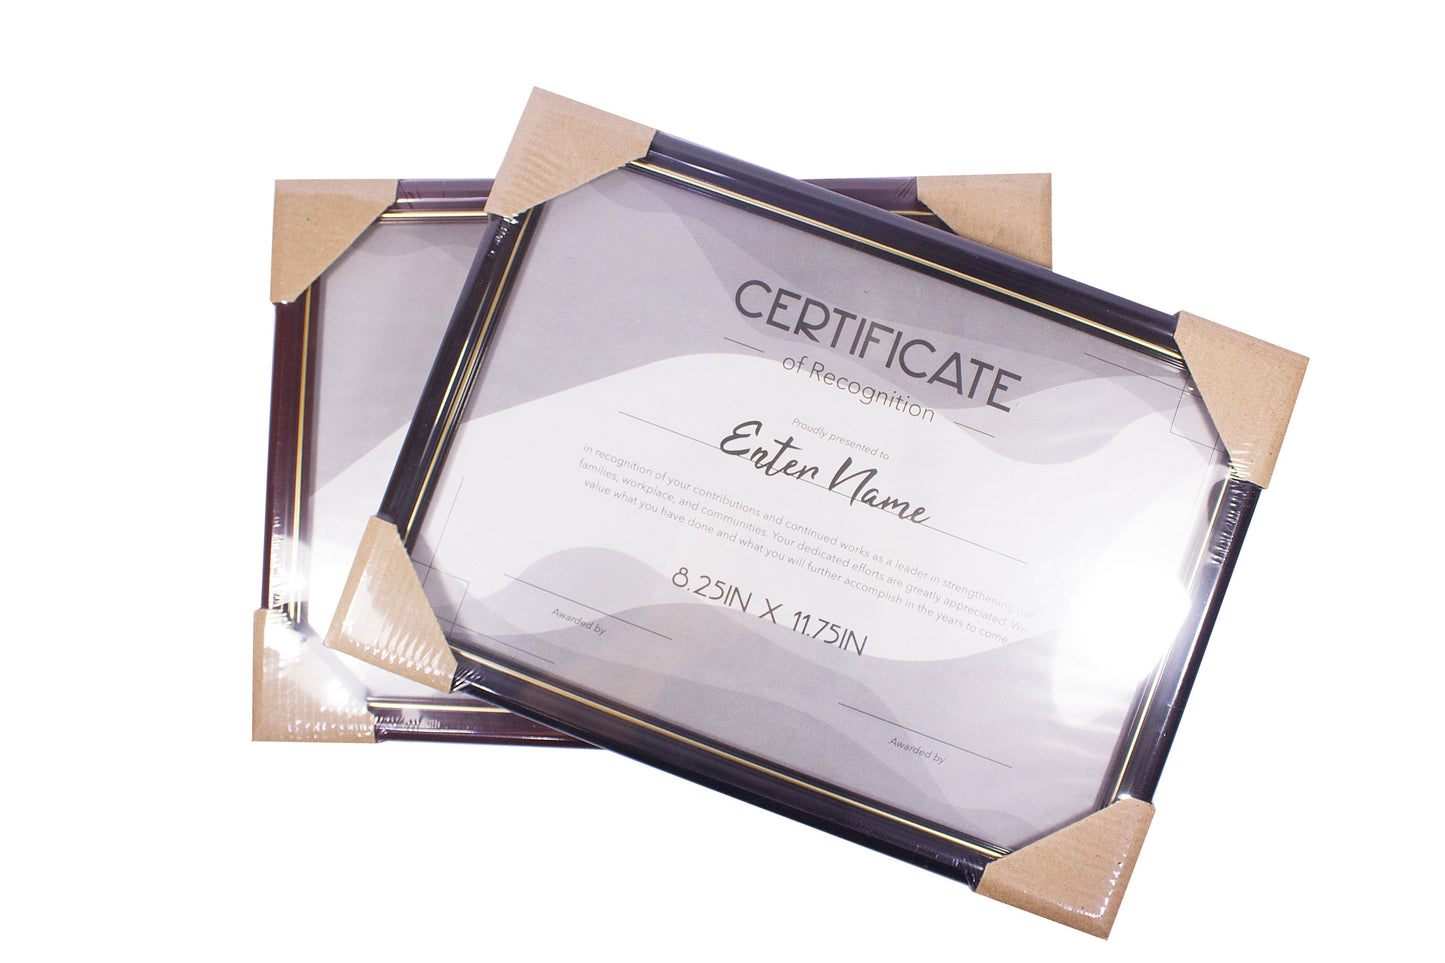 Certificate Frame 8.25in X 11.75in